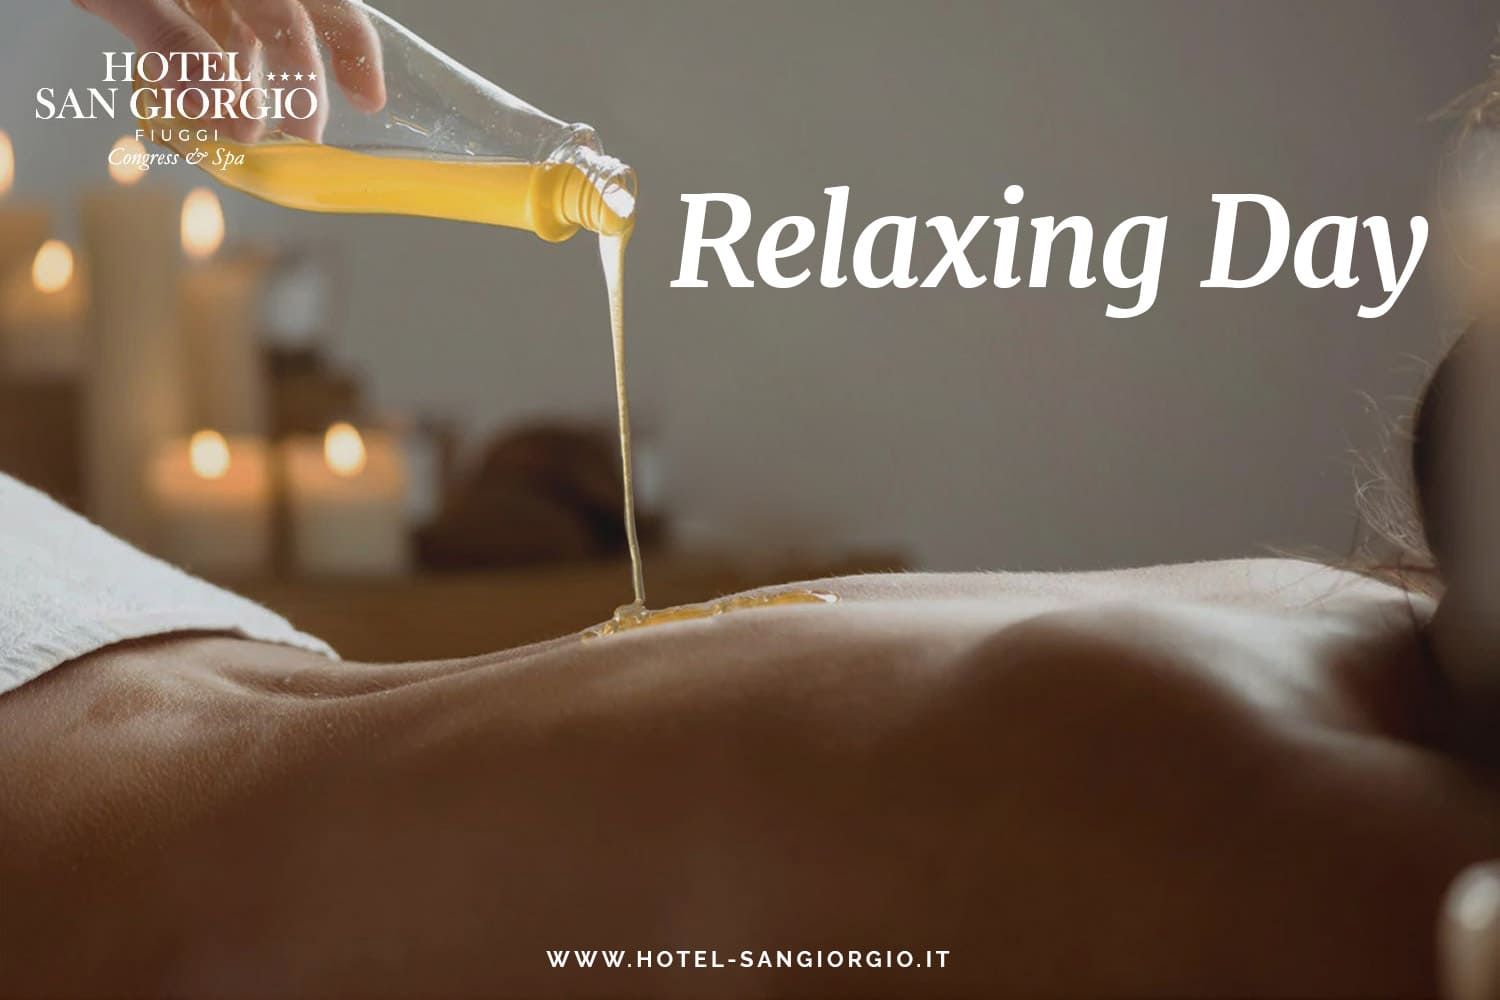 relaxing-day-hotel-san-giorgio-relaxingday-relax-day-giorno-di-relax-benessere-spa-massaggio-massaggi-offerte-pacchetti-spa-centro-benessere-olio-trattamento-trattament.jpg